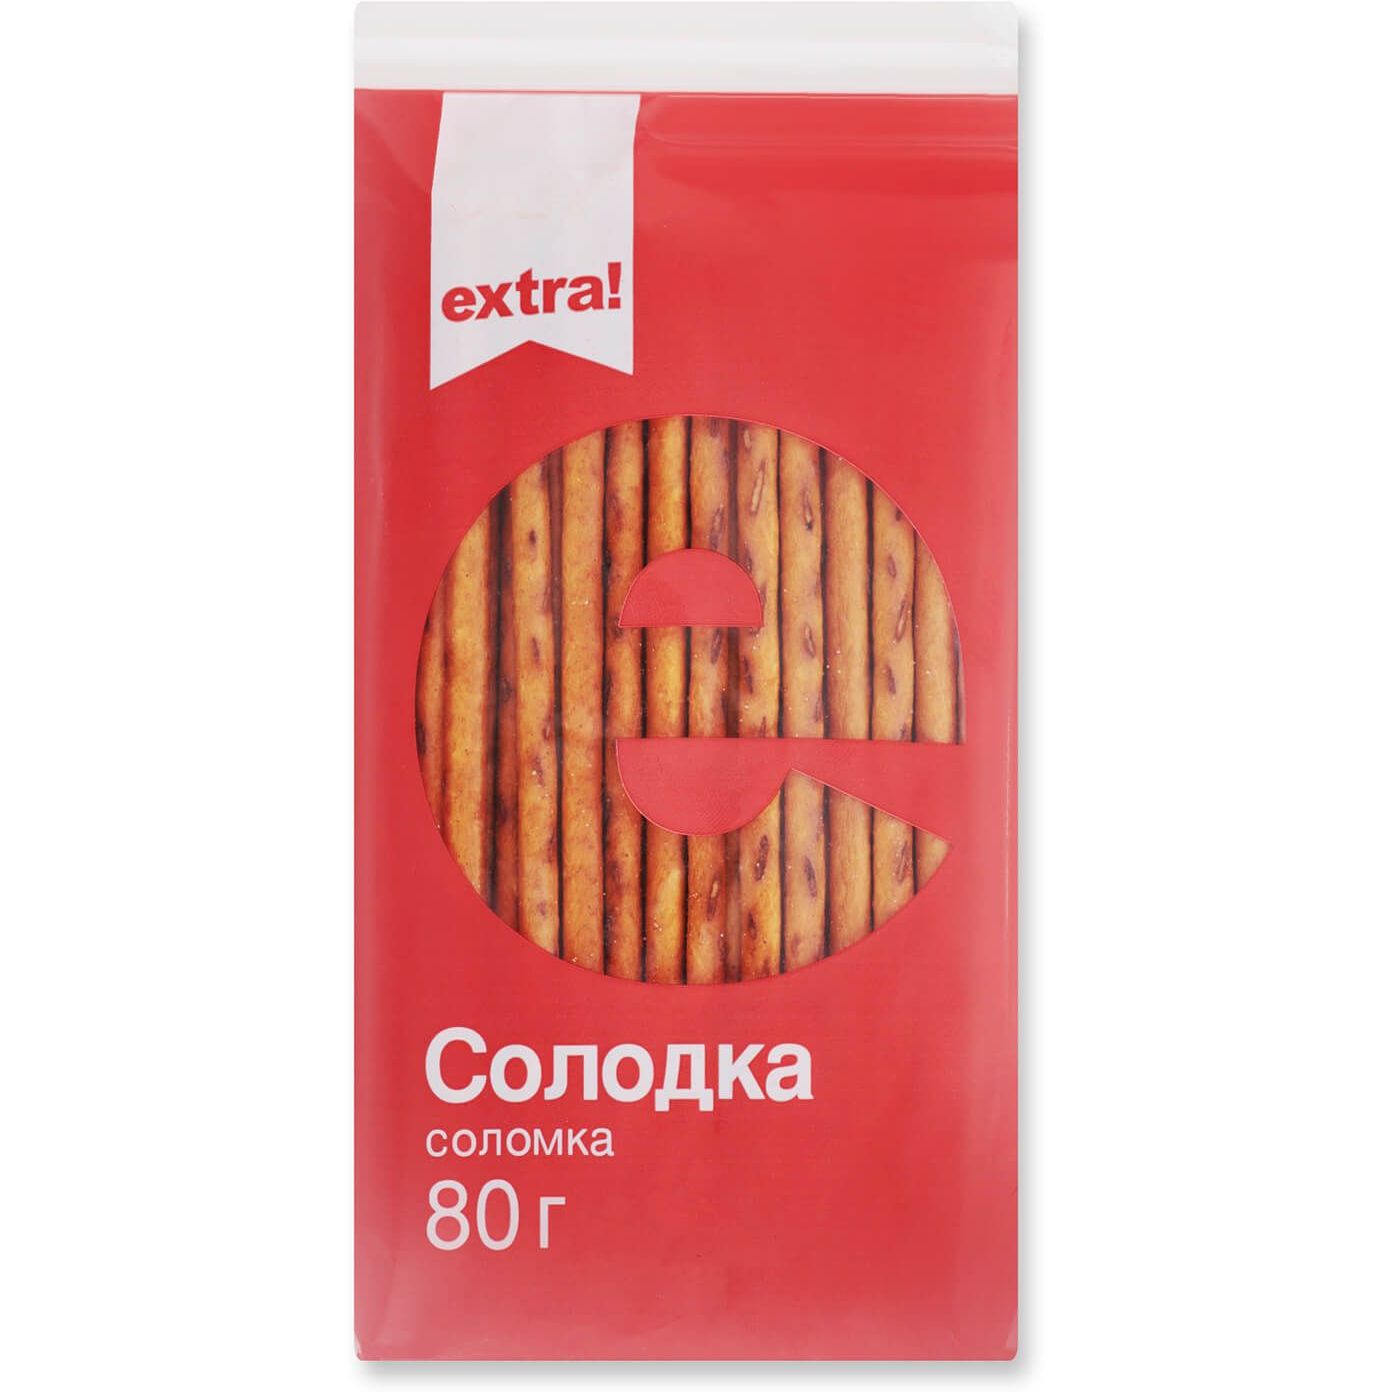 Соломка Extra! солодка, 80 г (483700) - фото 1